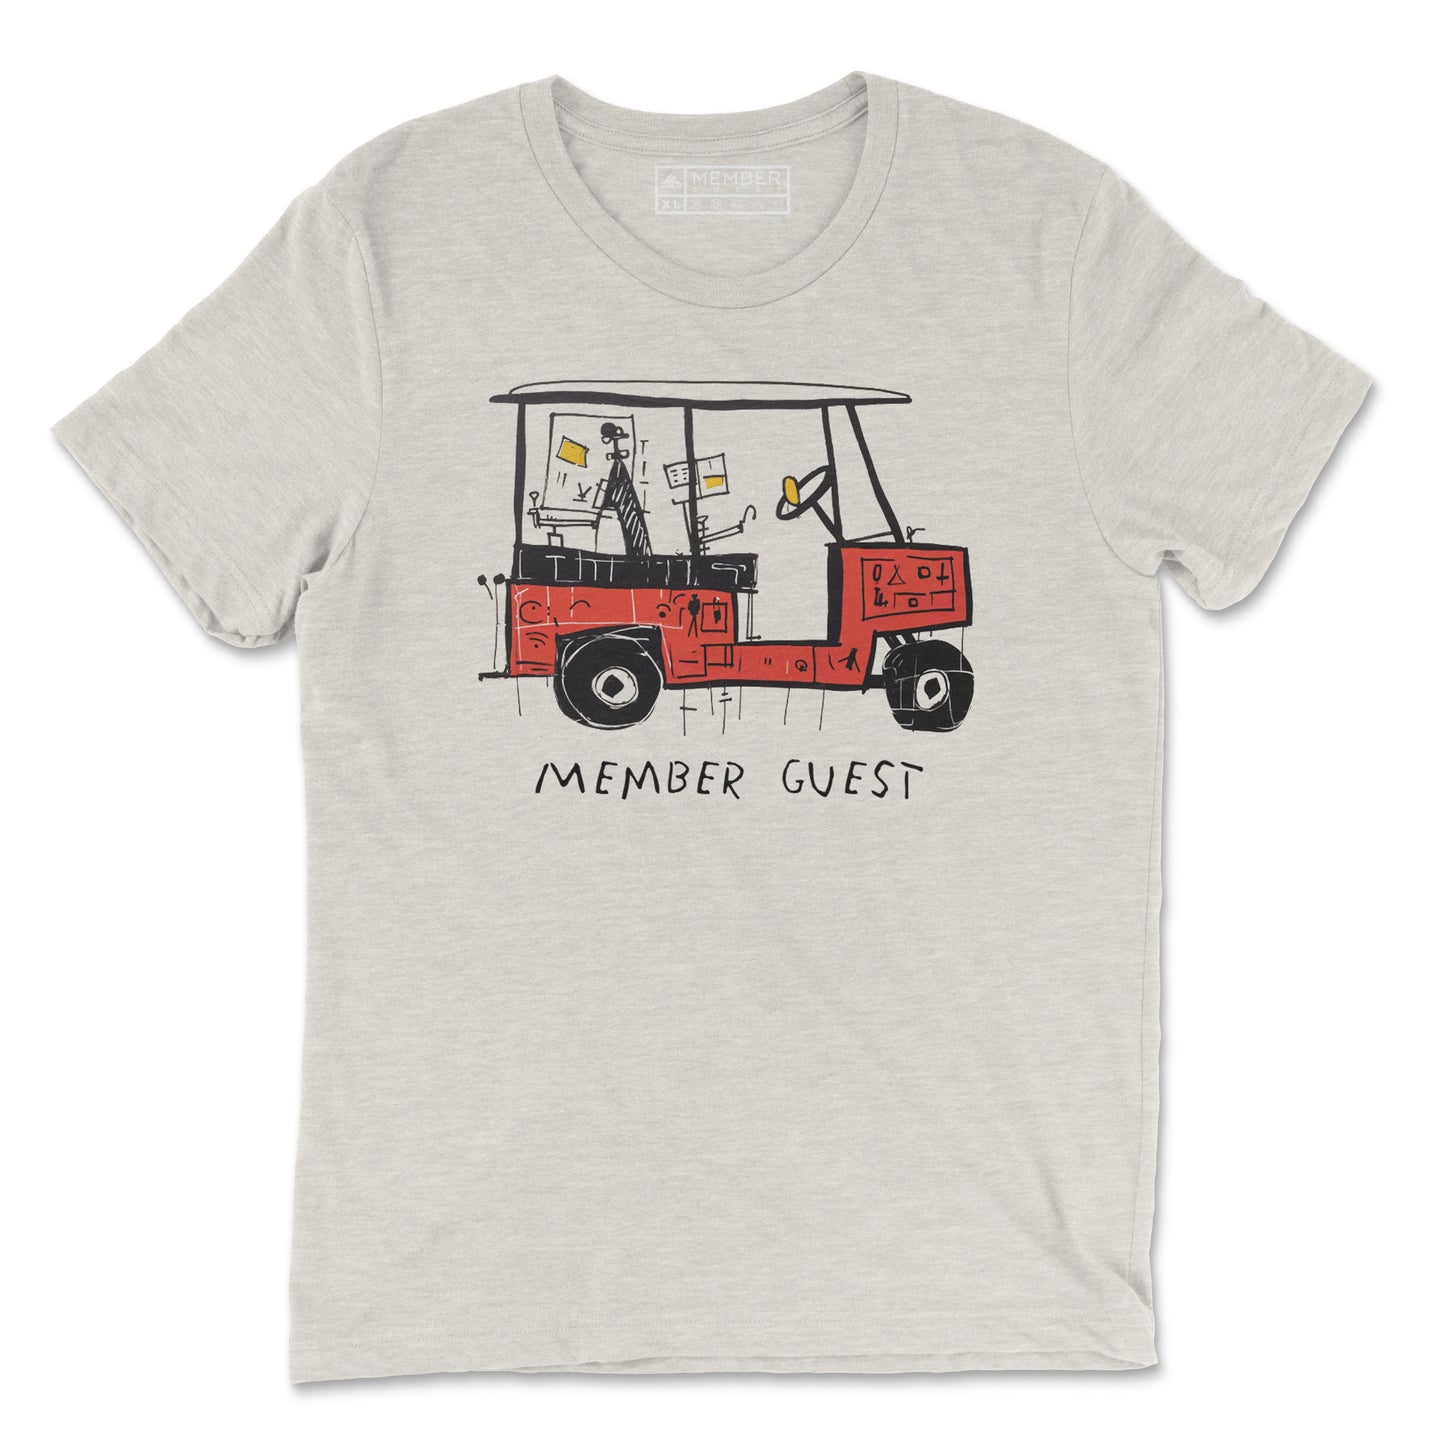 Basquiat Inspired Golf T-Shirt